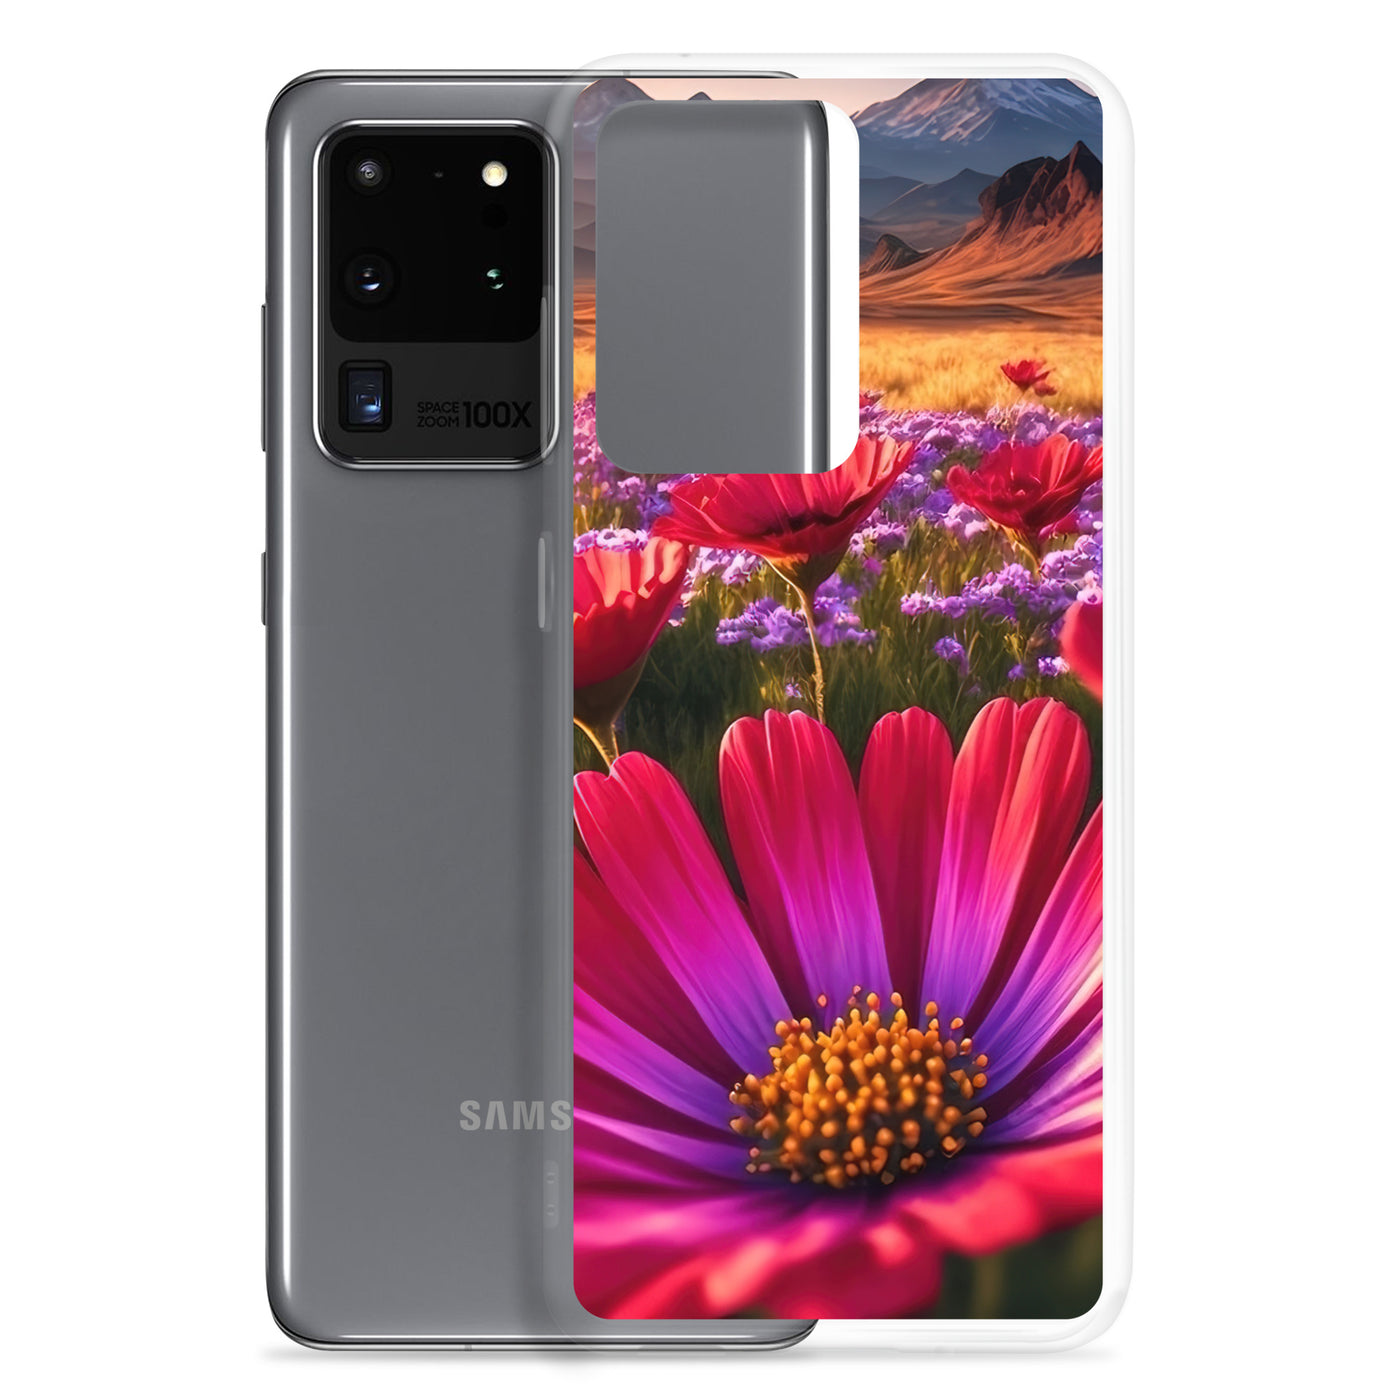 Wünderschöne Blumen und Berge im Hintergrund - Samsung Schutzhülle (durchsichtig) berge xxx